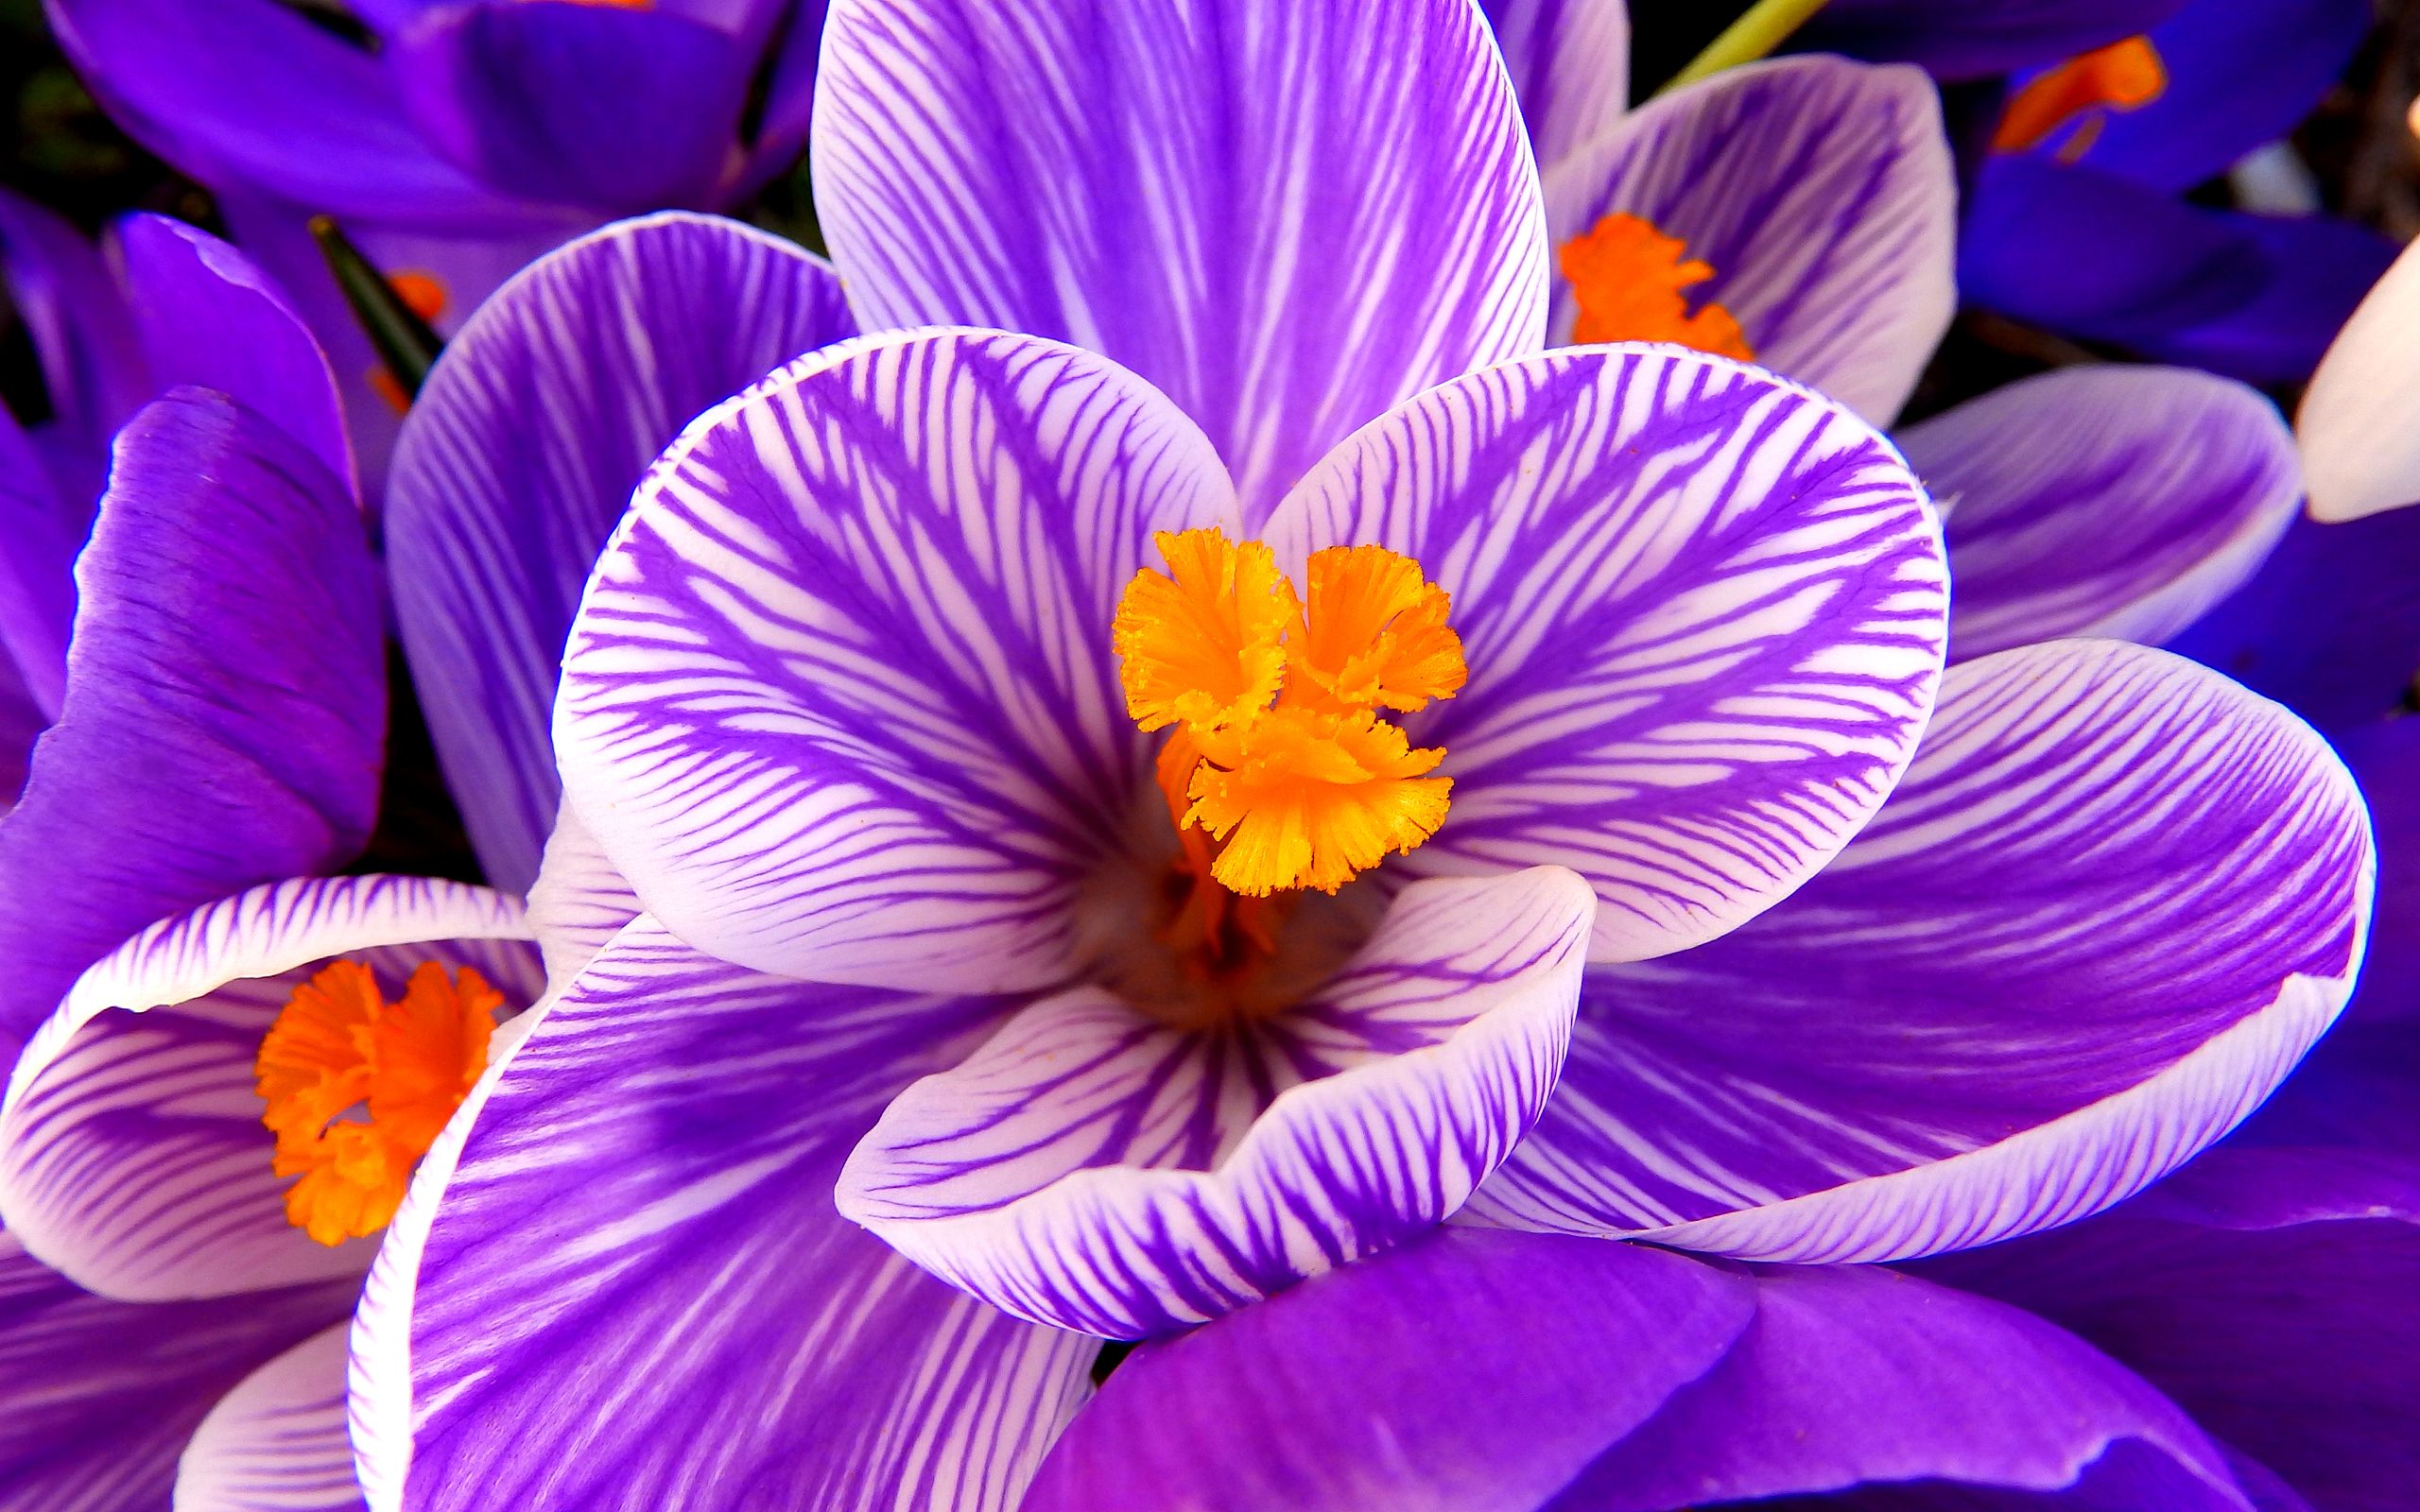 Flower HD Image Wallpaper Crocus Flower Purple Flower HD Flowers